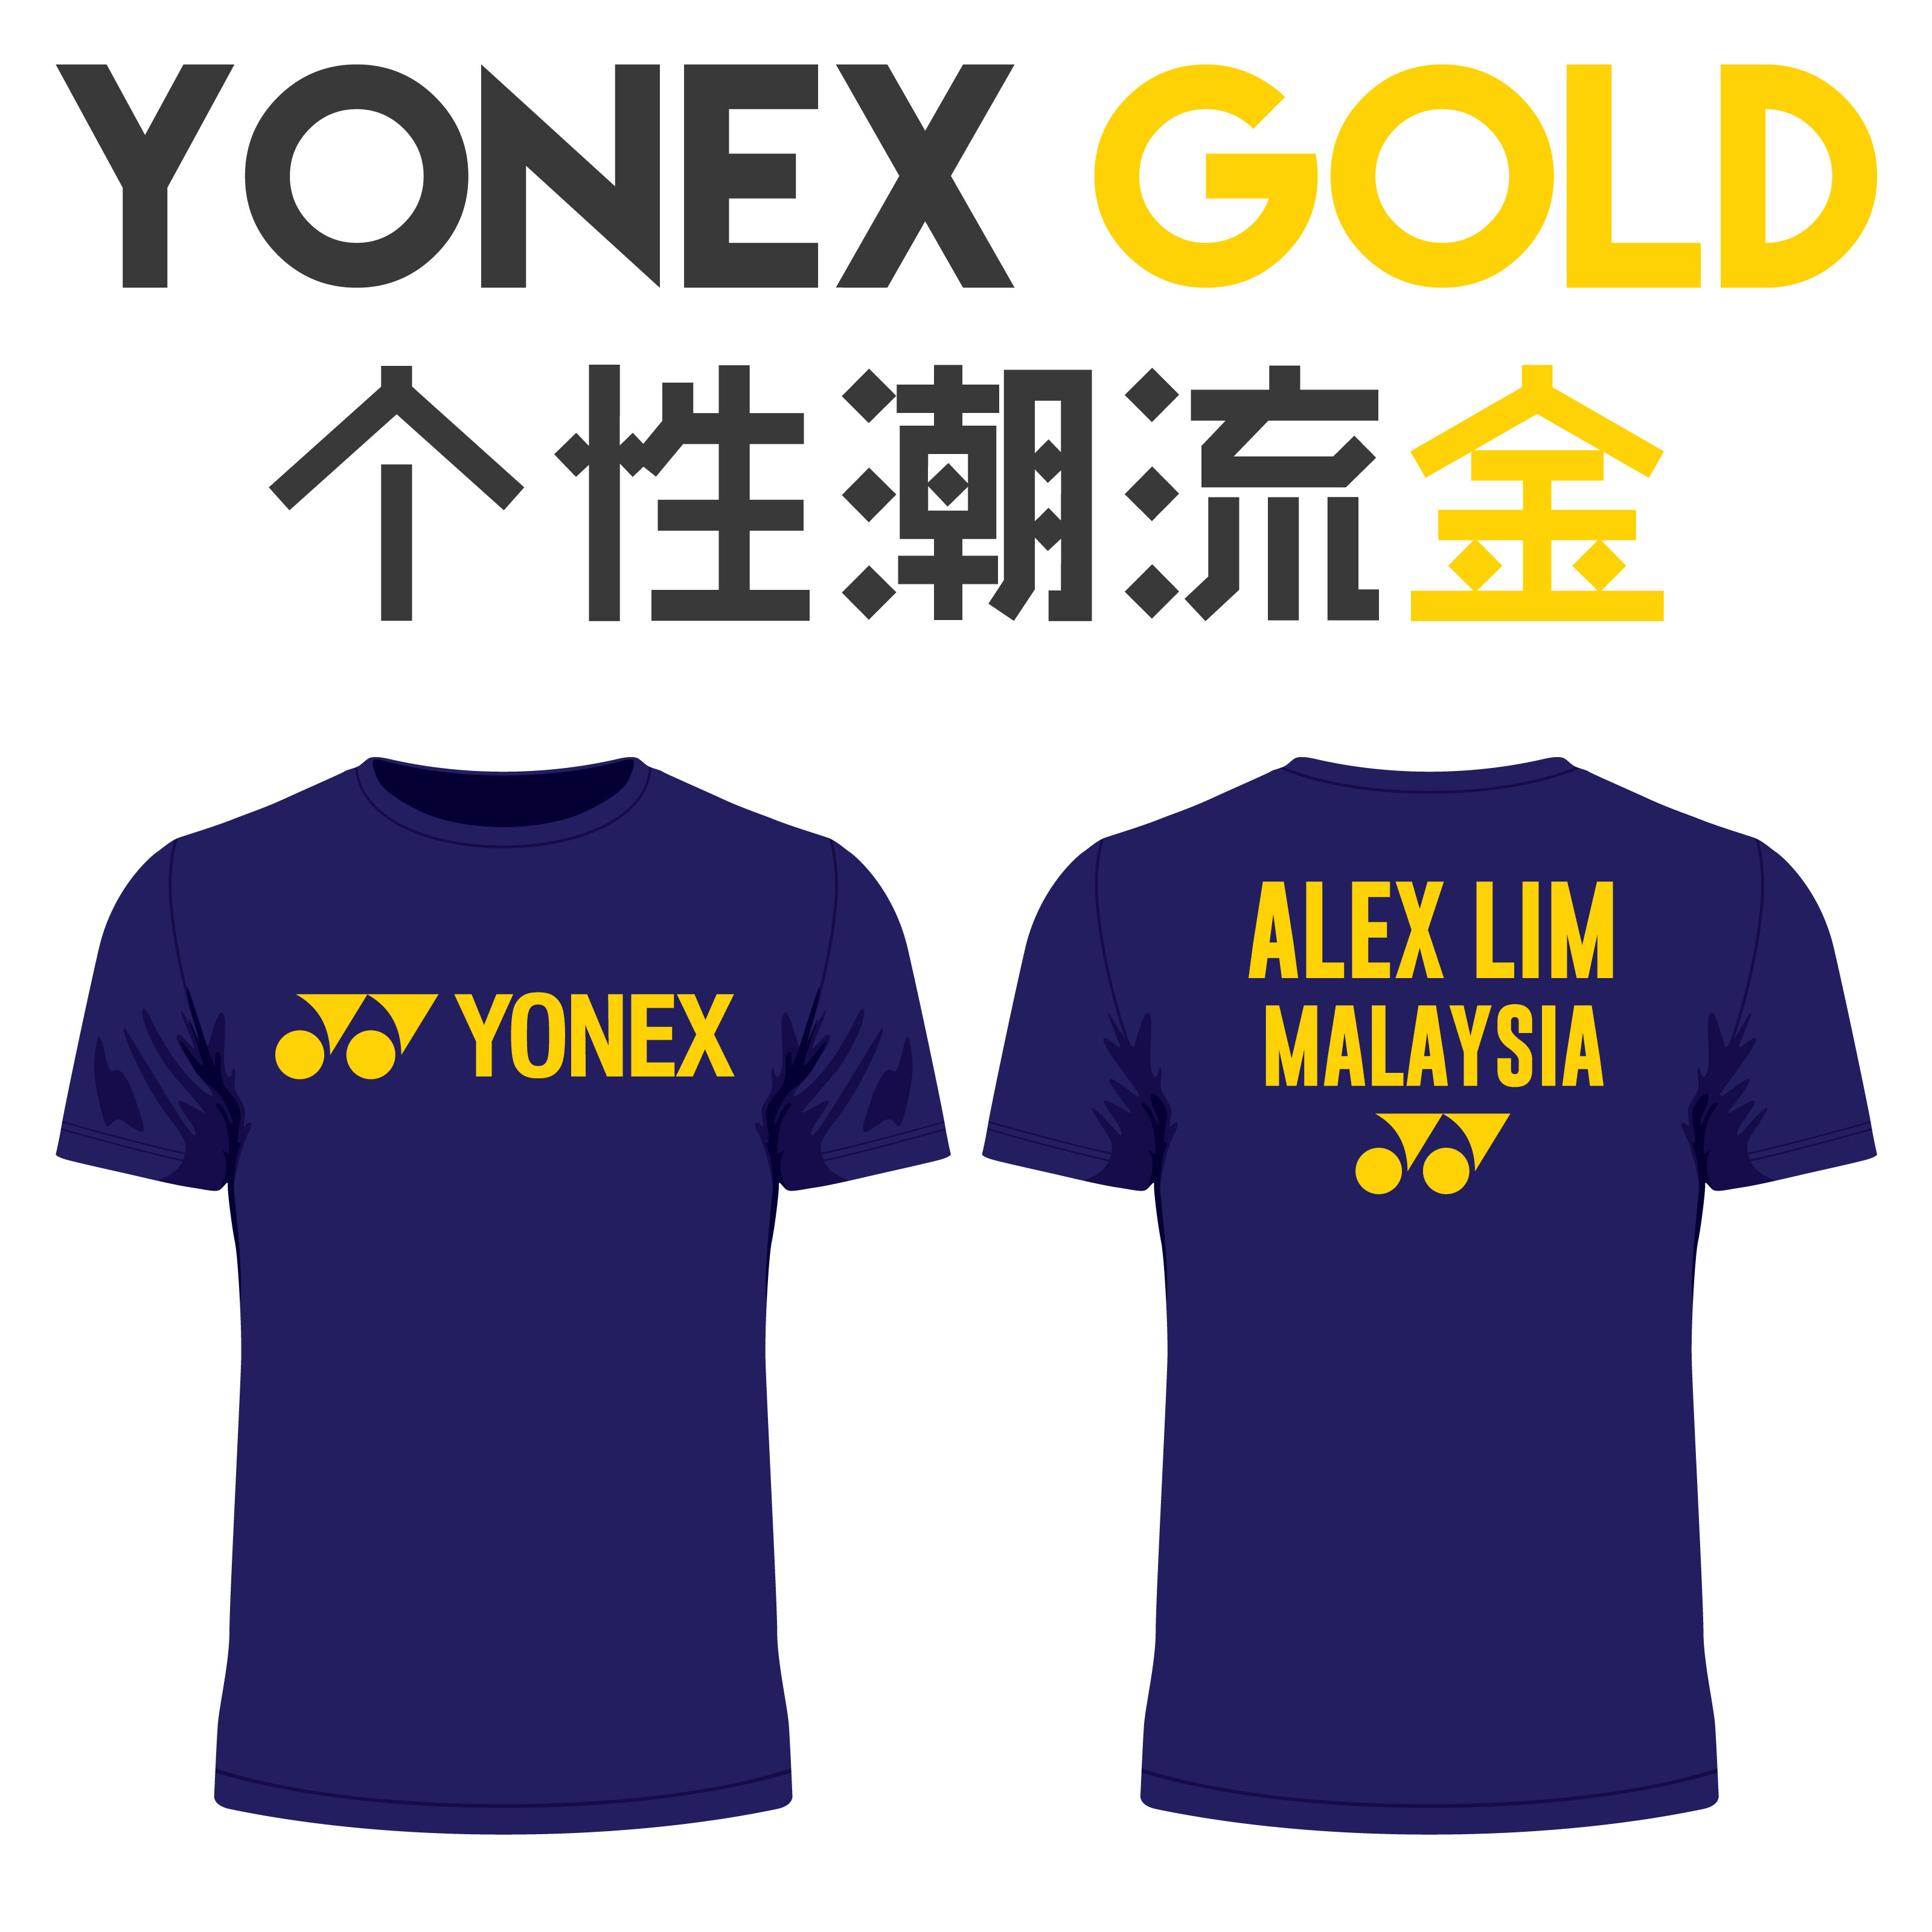 Yonex Shirt - Yonex Gold